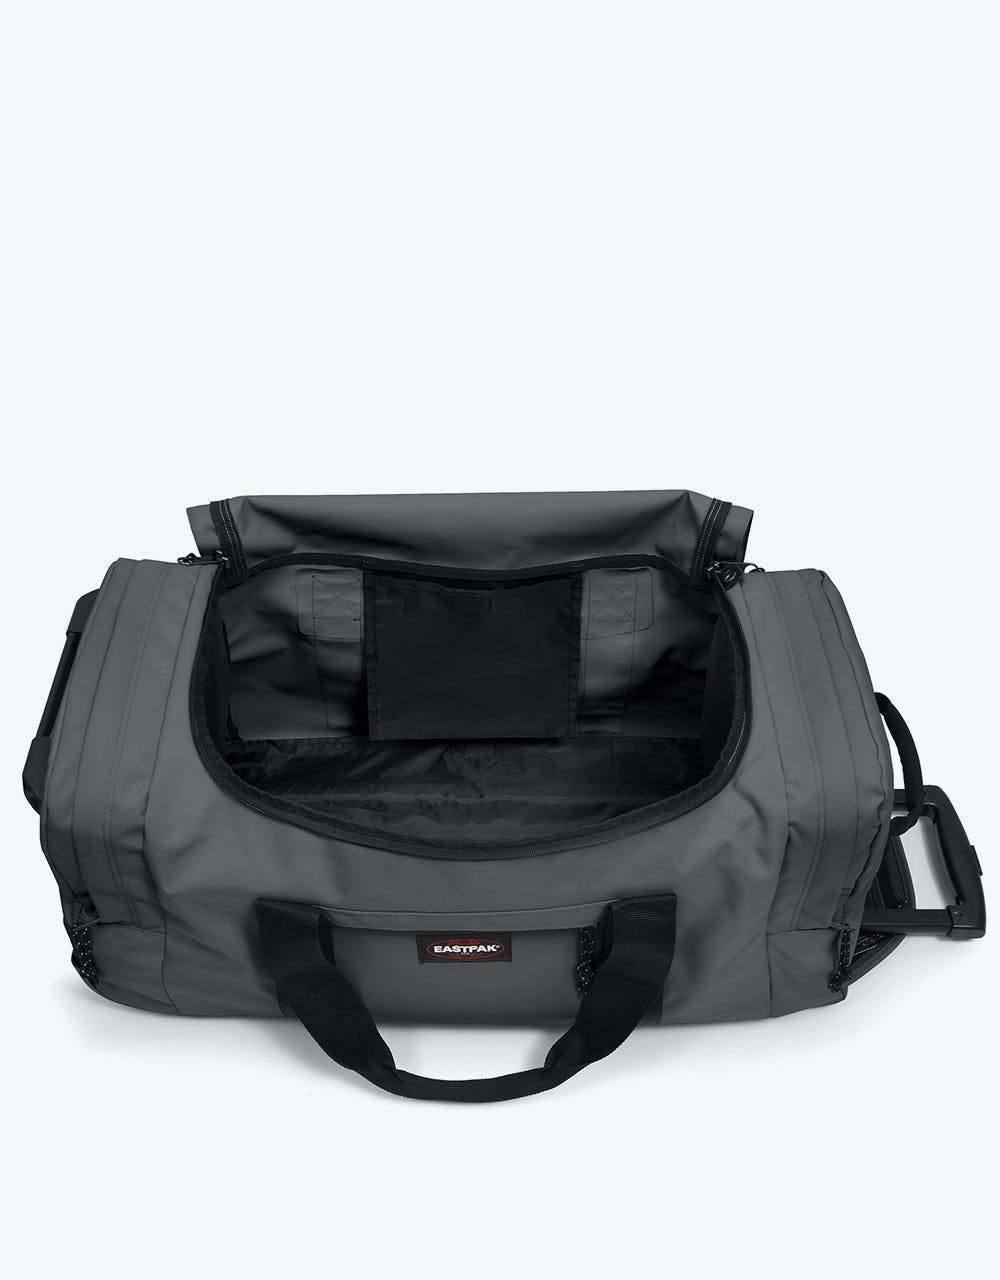 Eastpak Leatherface Medium Wheeled Luggage Bag - Woven Grey